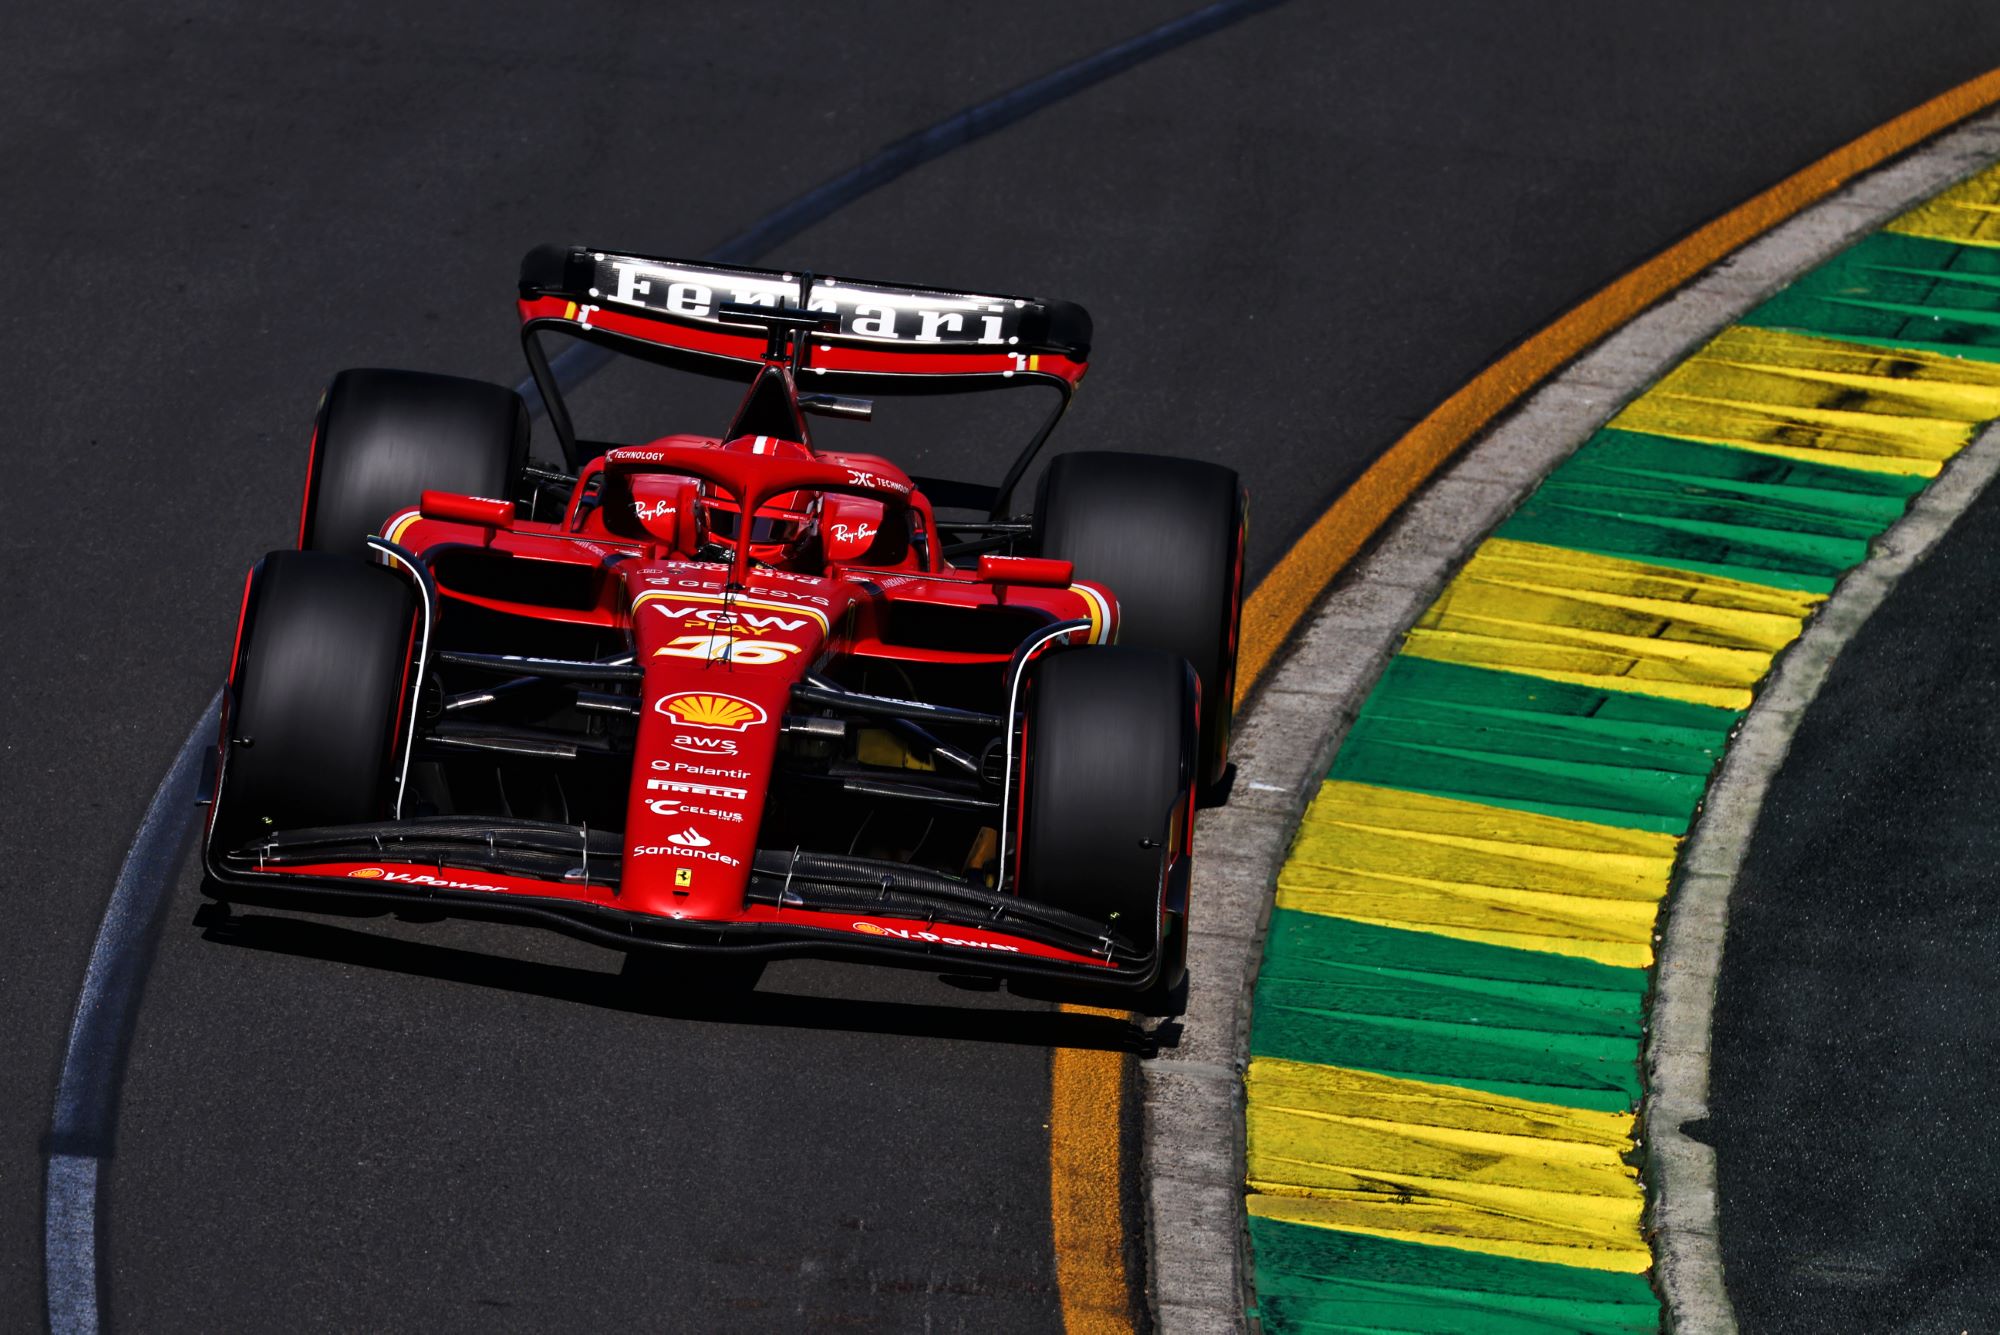 F1: Ferrari foca no título de construtores este ano